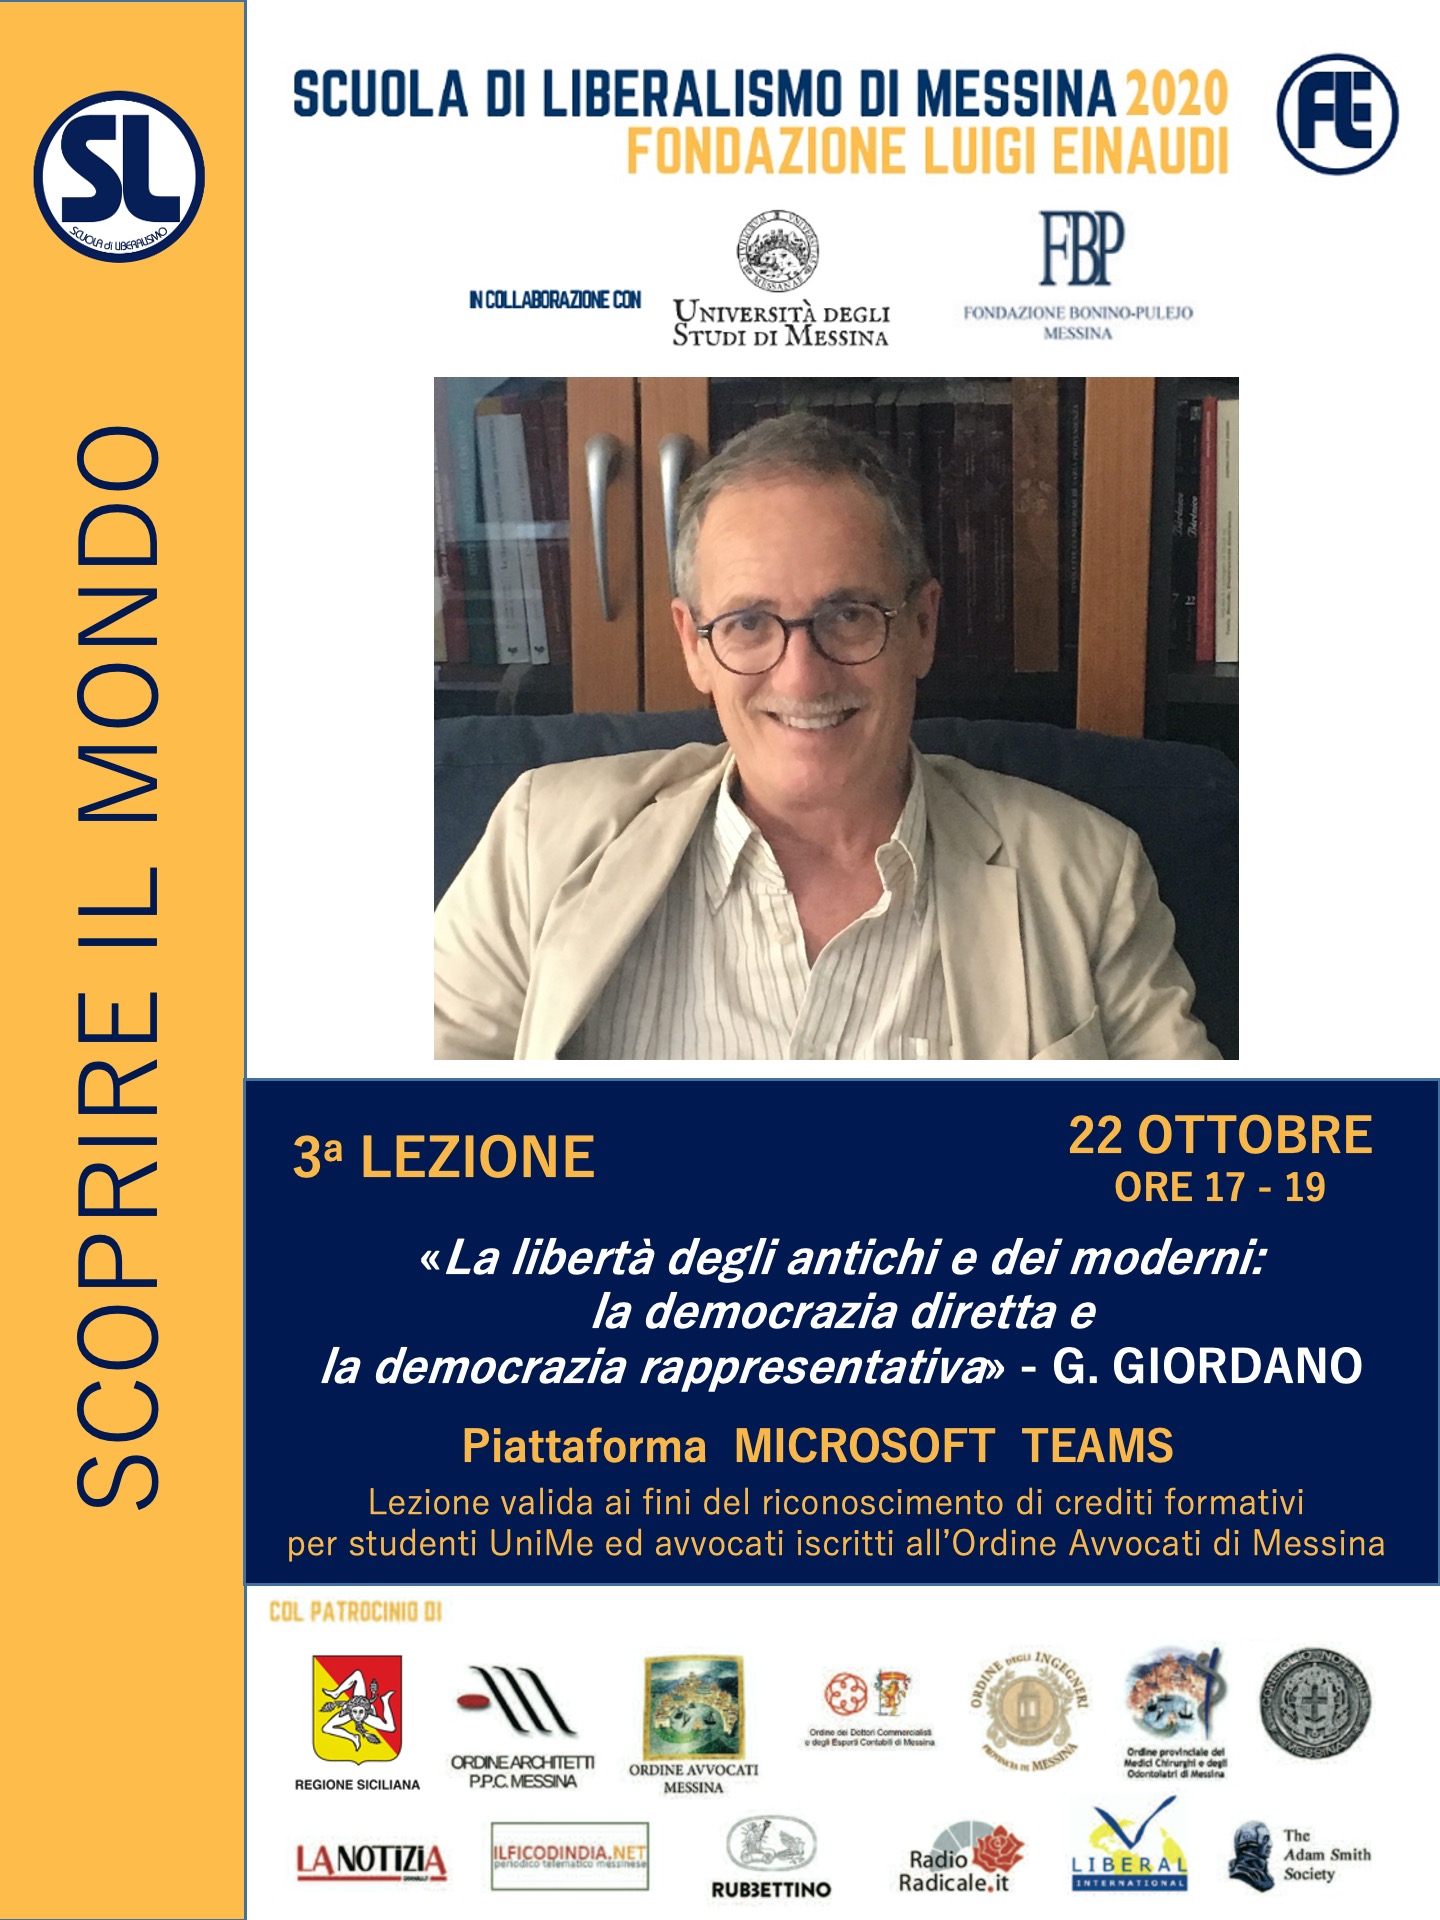 Scuola di Liberalismo 2020 Messina: 21 ottobre lezione di Giuseppe Giordano